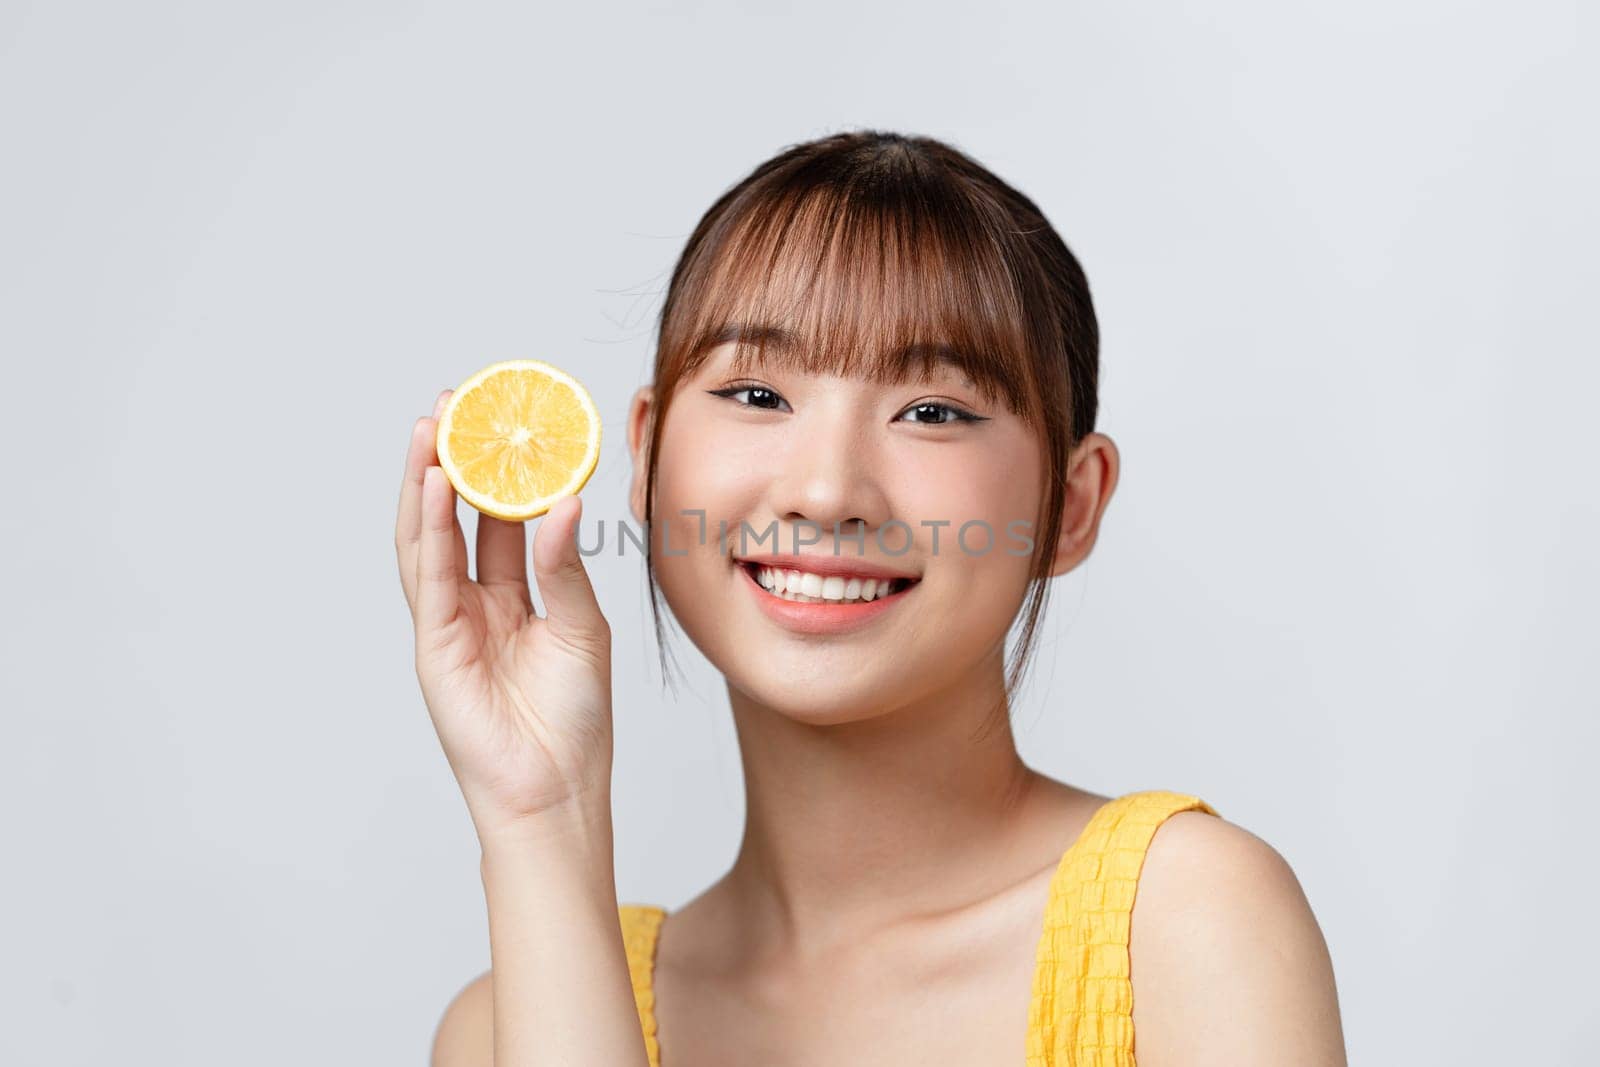 Girl holds lemons near her face